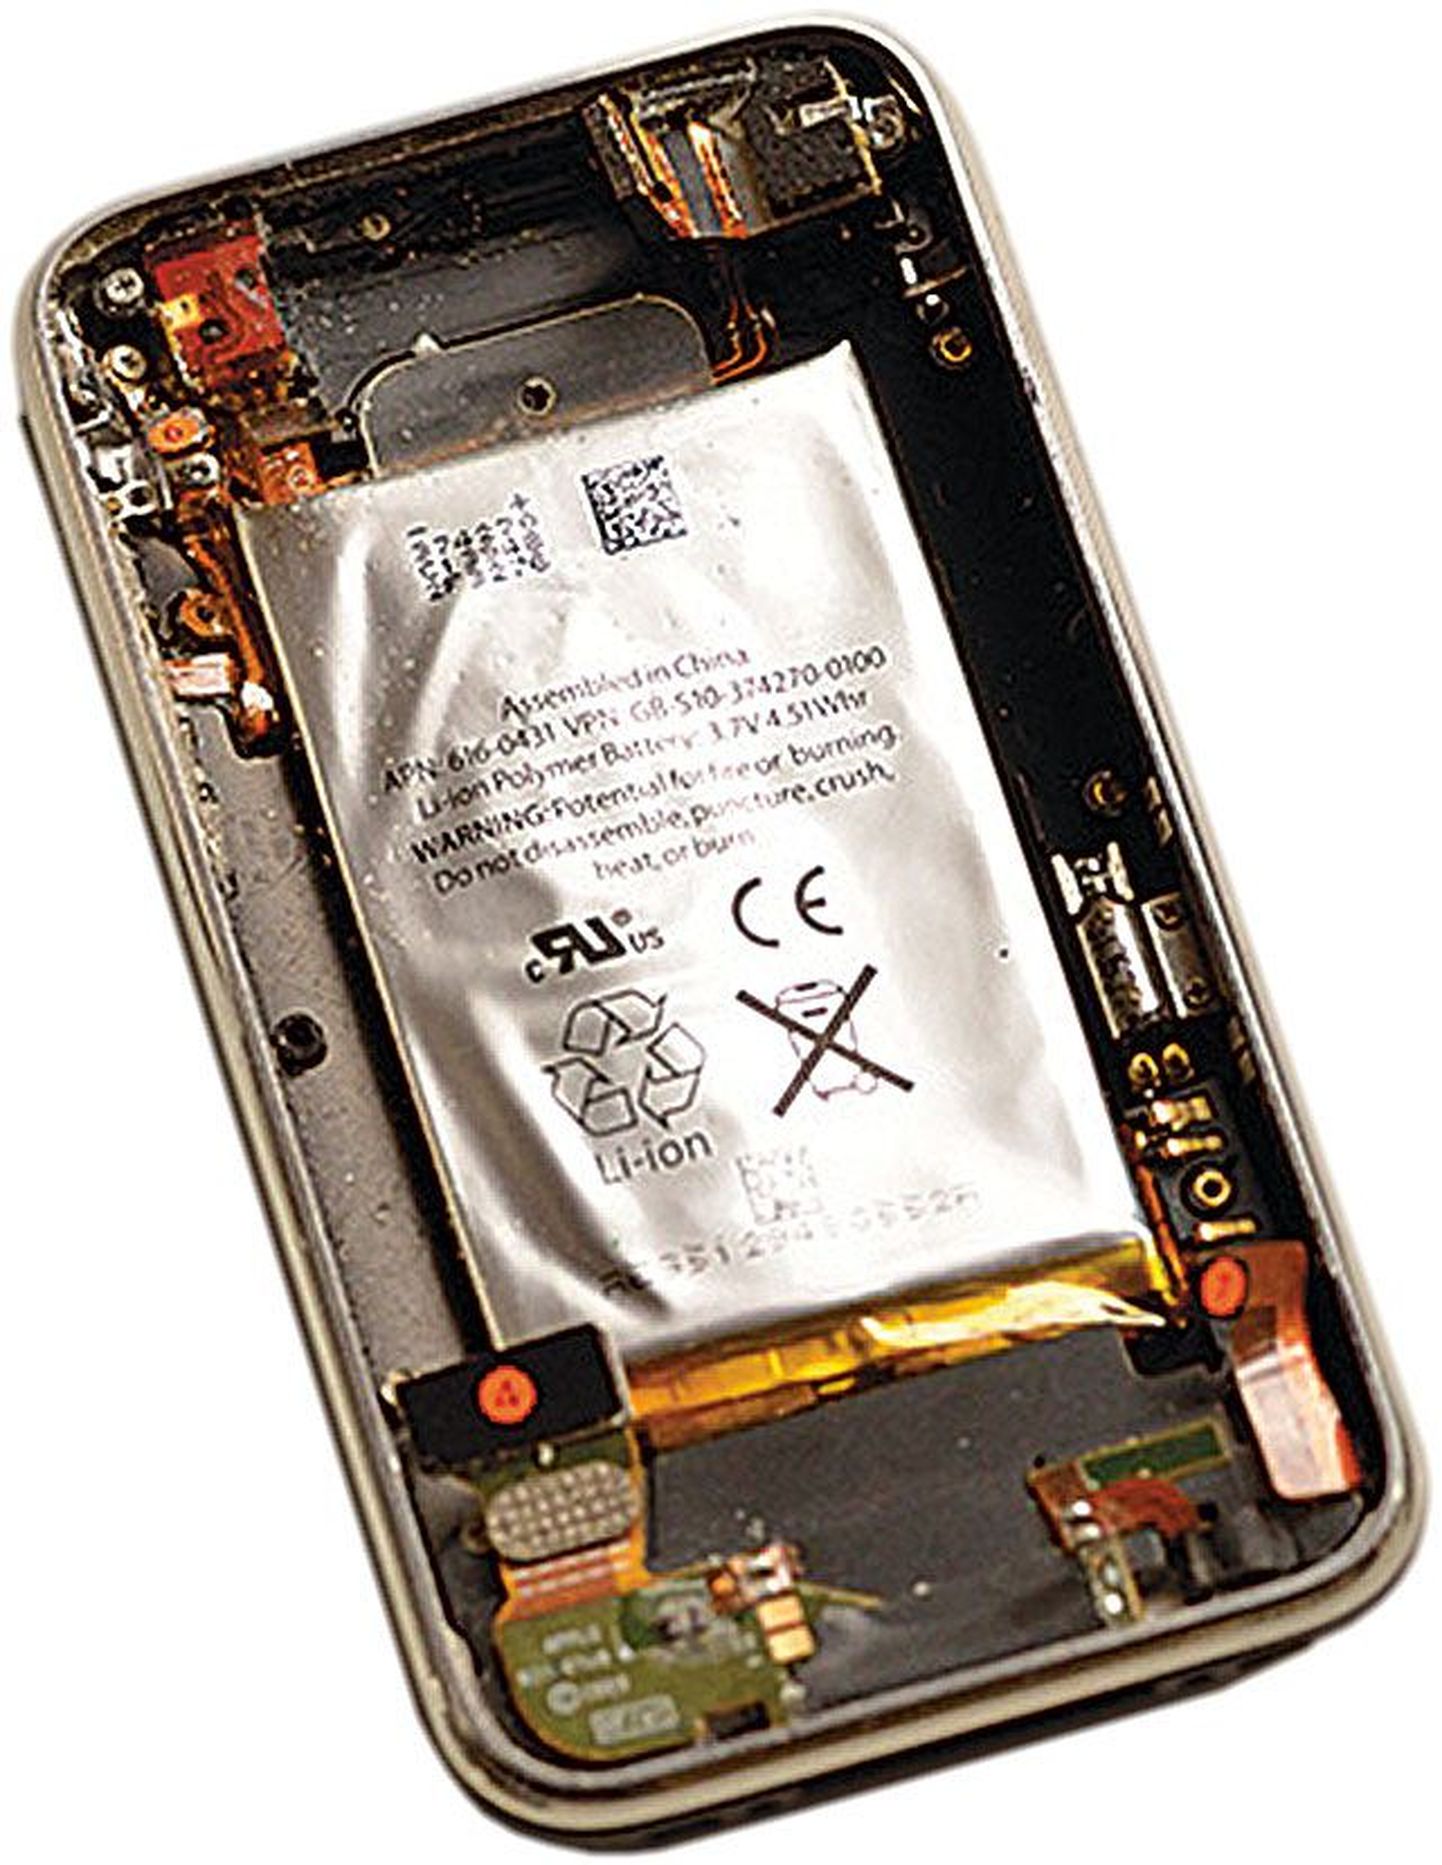 Pildil on paari aasta vanune iPhone 3G, mille aku on paisunud, lõhkudes nii korpuse kui painutades tugevalt seadme emaplaati.